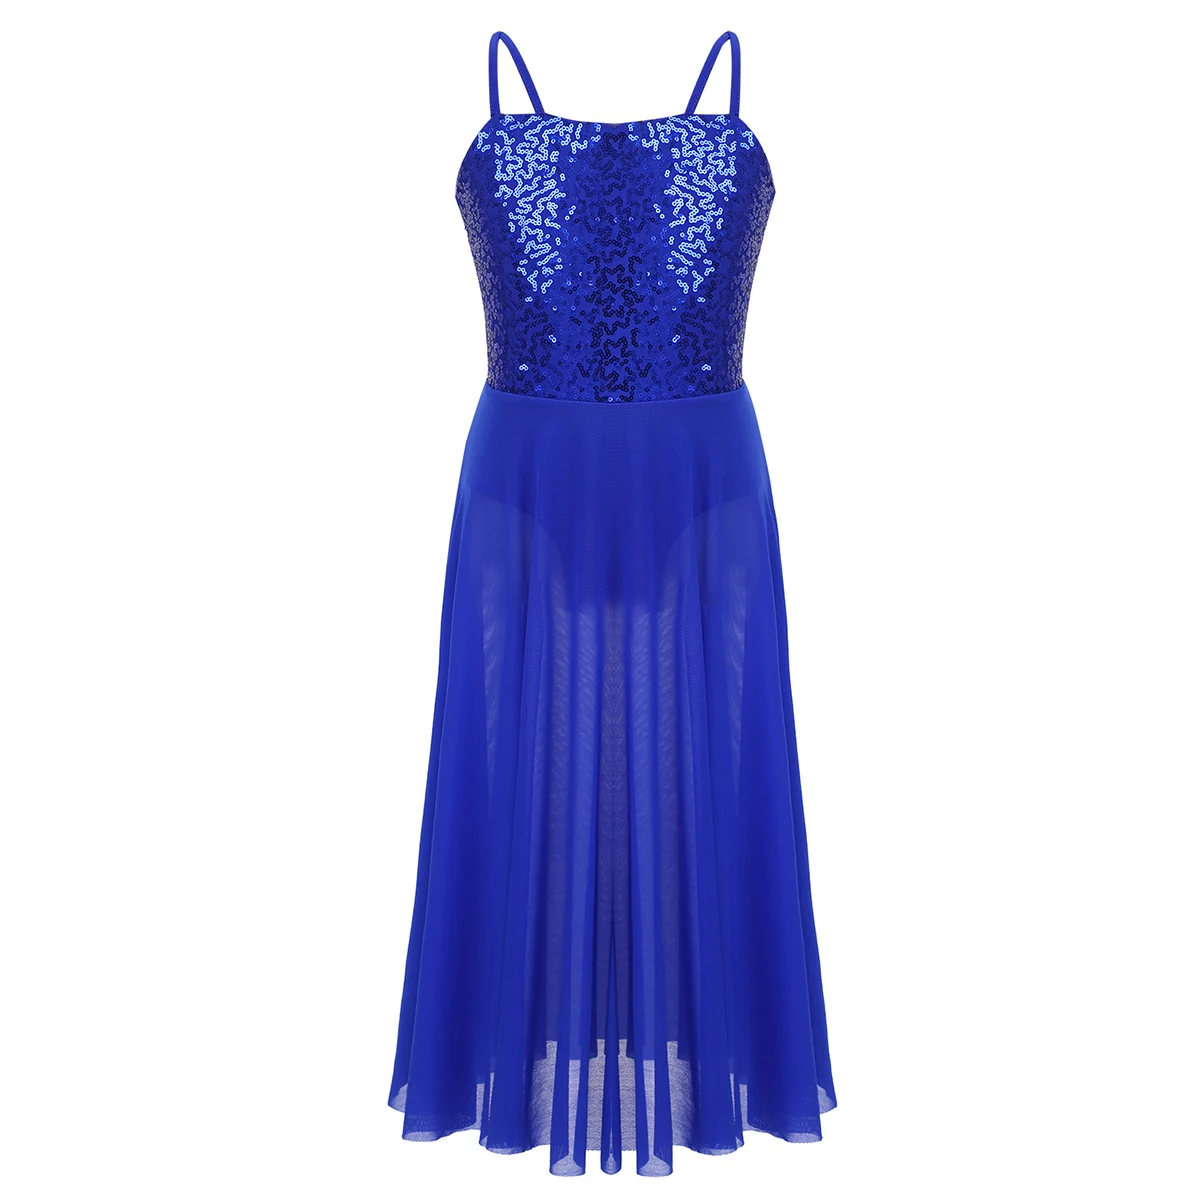 DPOIS/Современная балетная юбка для девочек с лирическими похвалами, балерина, Современный бальный костюм, блестящее танцевальное платье с фатиновой юбкой - Цвет: Blue